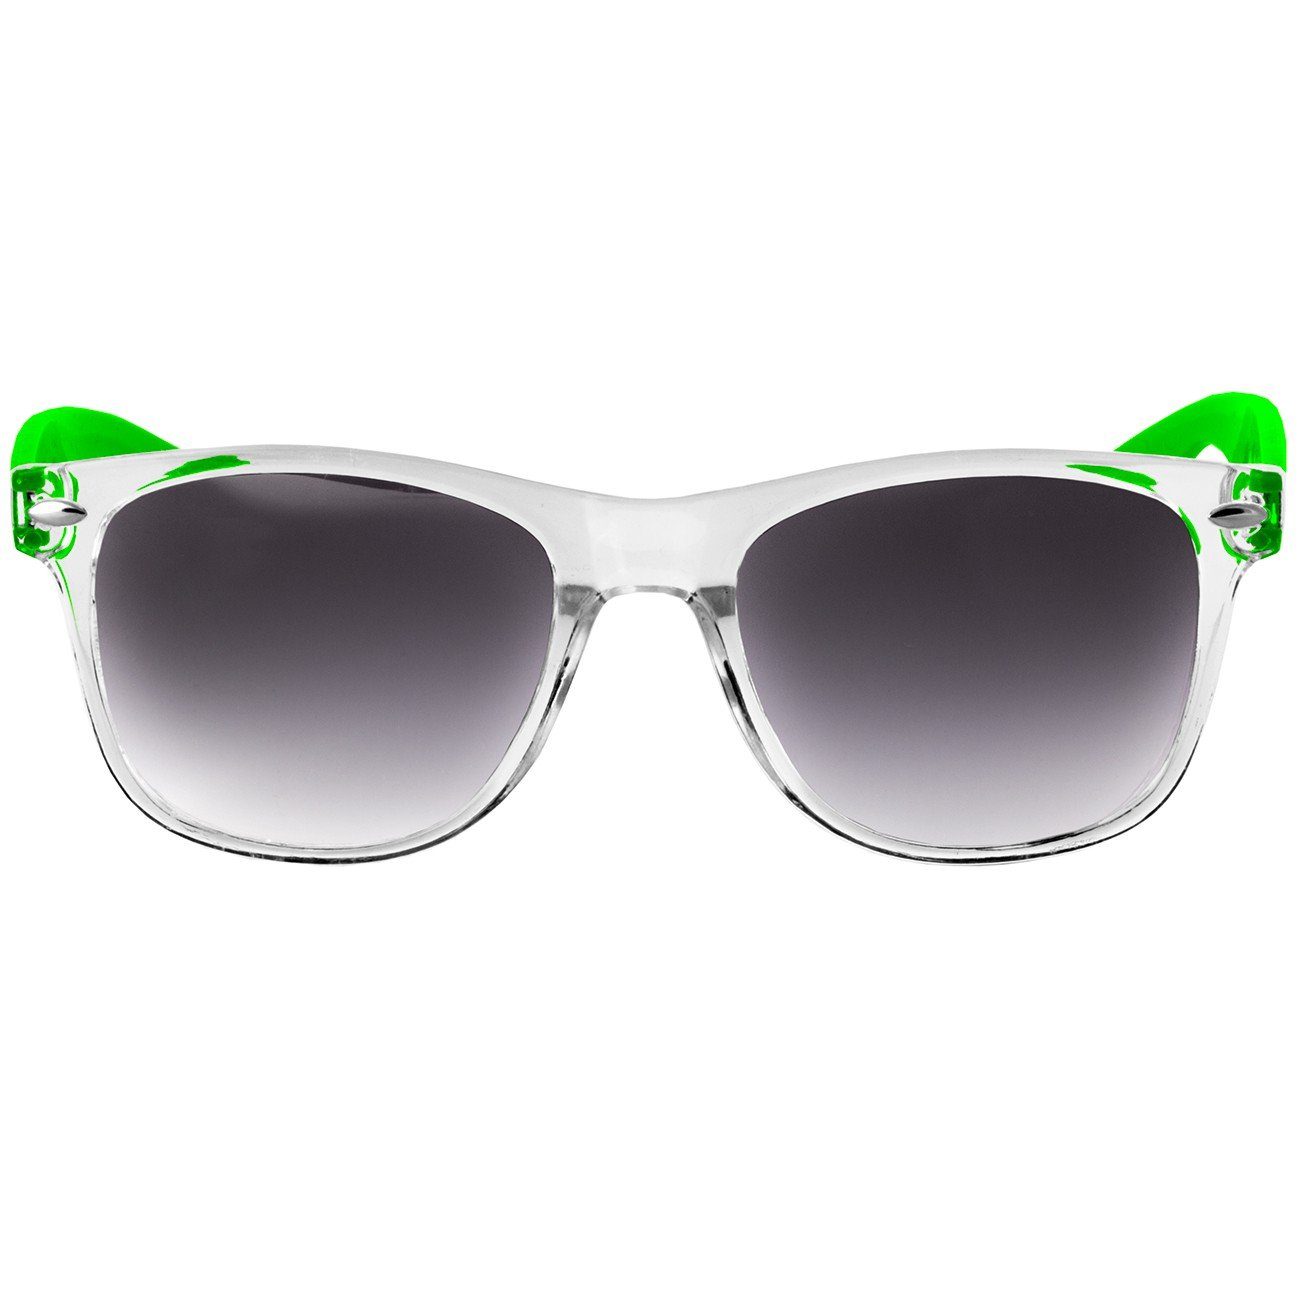 SG017 RETRO Designbrille schwarz Caspar getönt / Damen Sonnenbrille grün